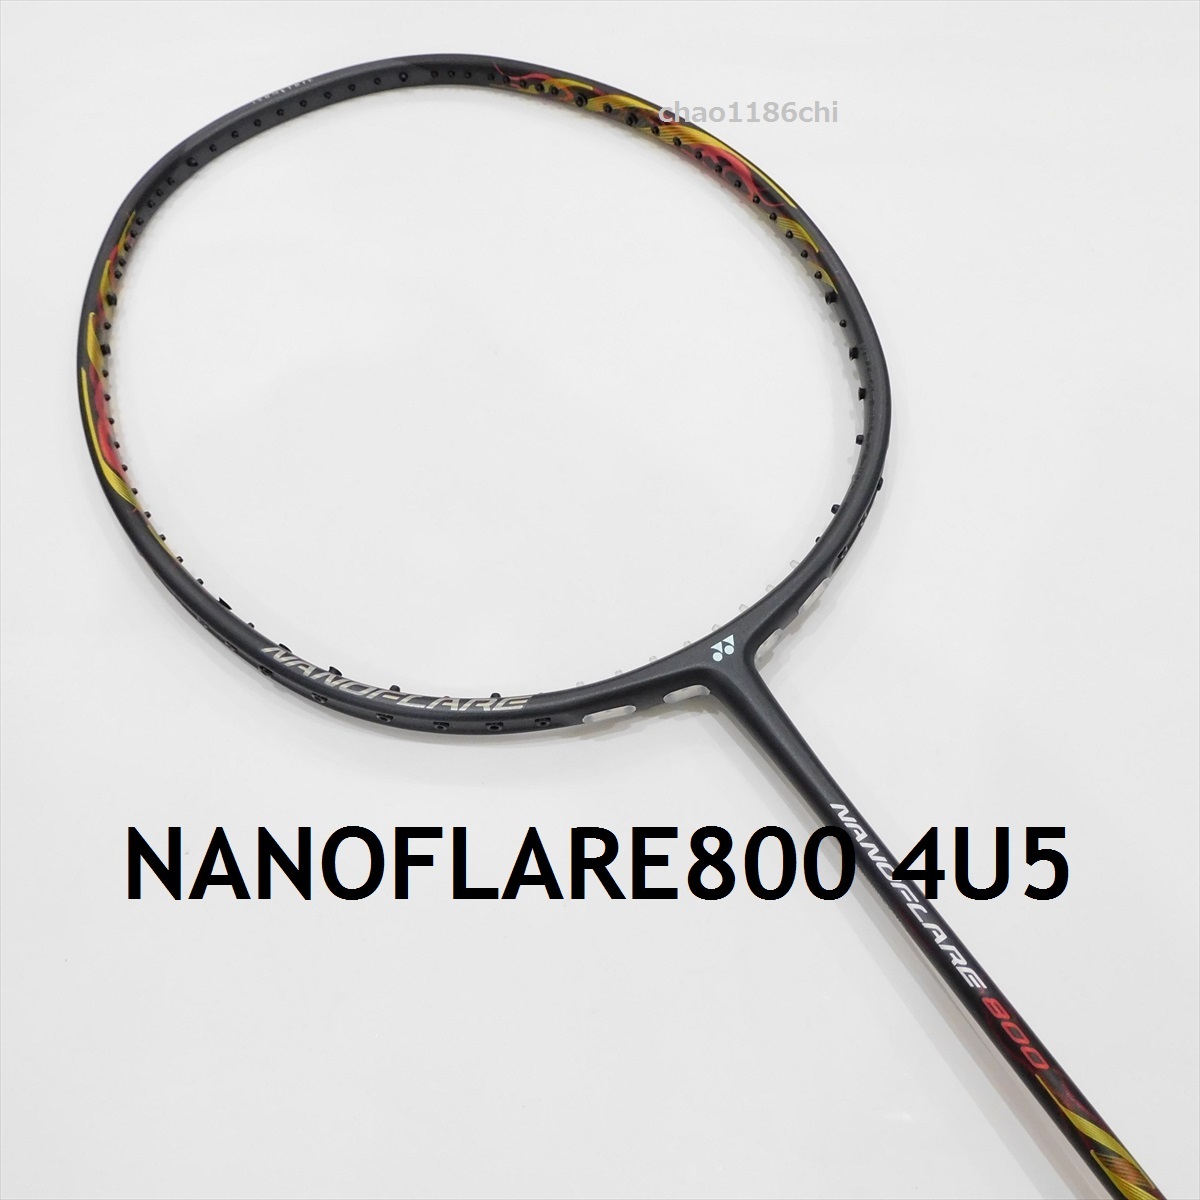  including carriage / new goods / Yonex /4U5/ nano flair 800/NANOFLARE800/NF800/800LT/800 Pro 700/ nano flair 800 Pro / nano flair 700/1000Z/800 game 